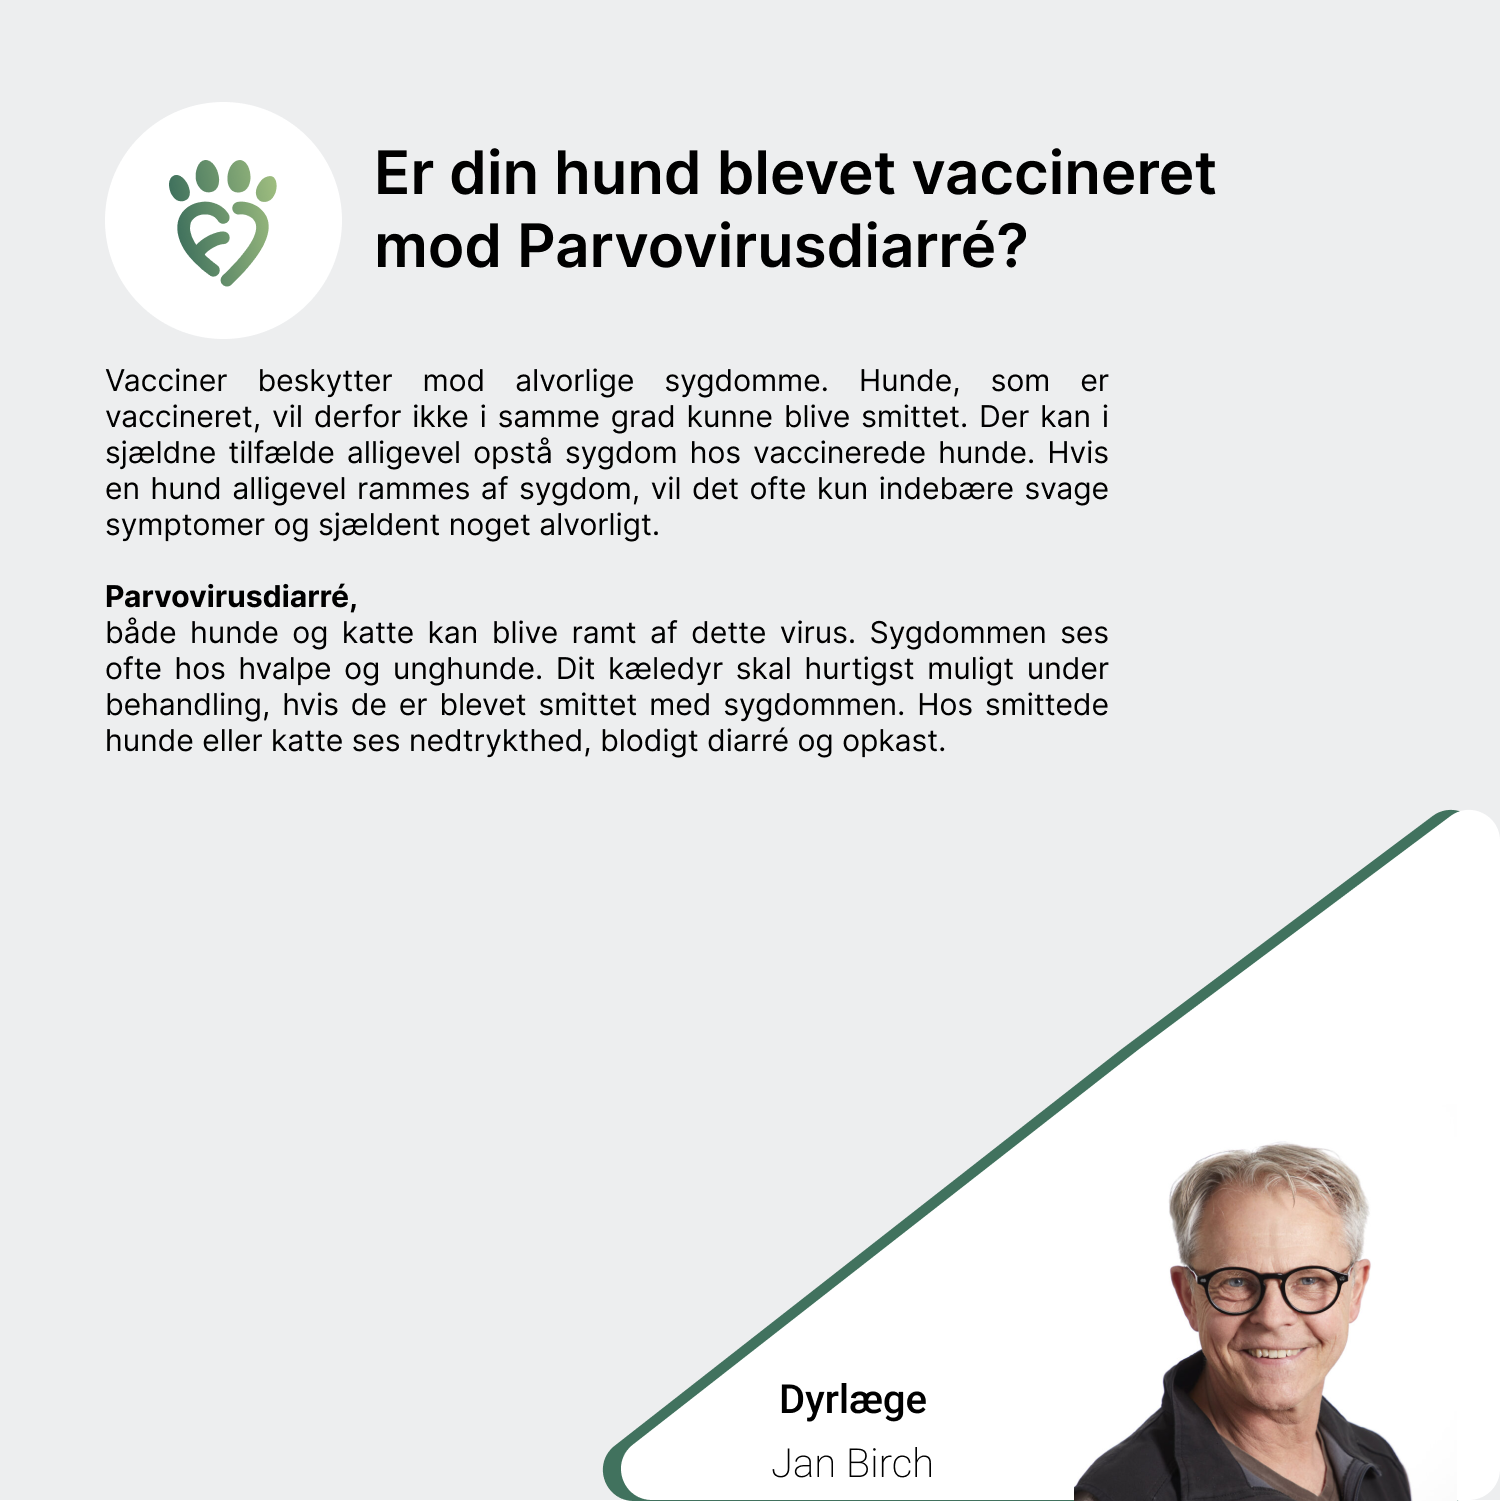 Er din hund blevet vaccineret mod Parvovirusdiarré_